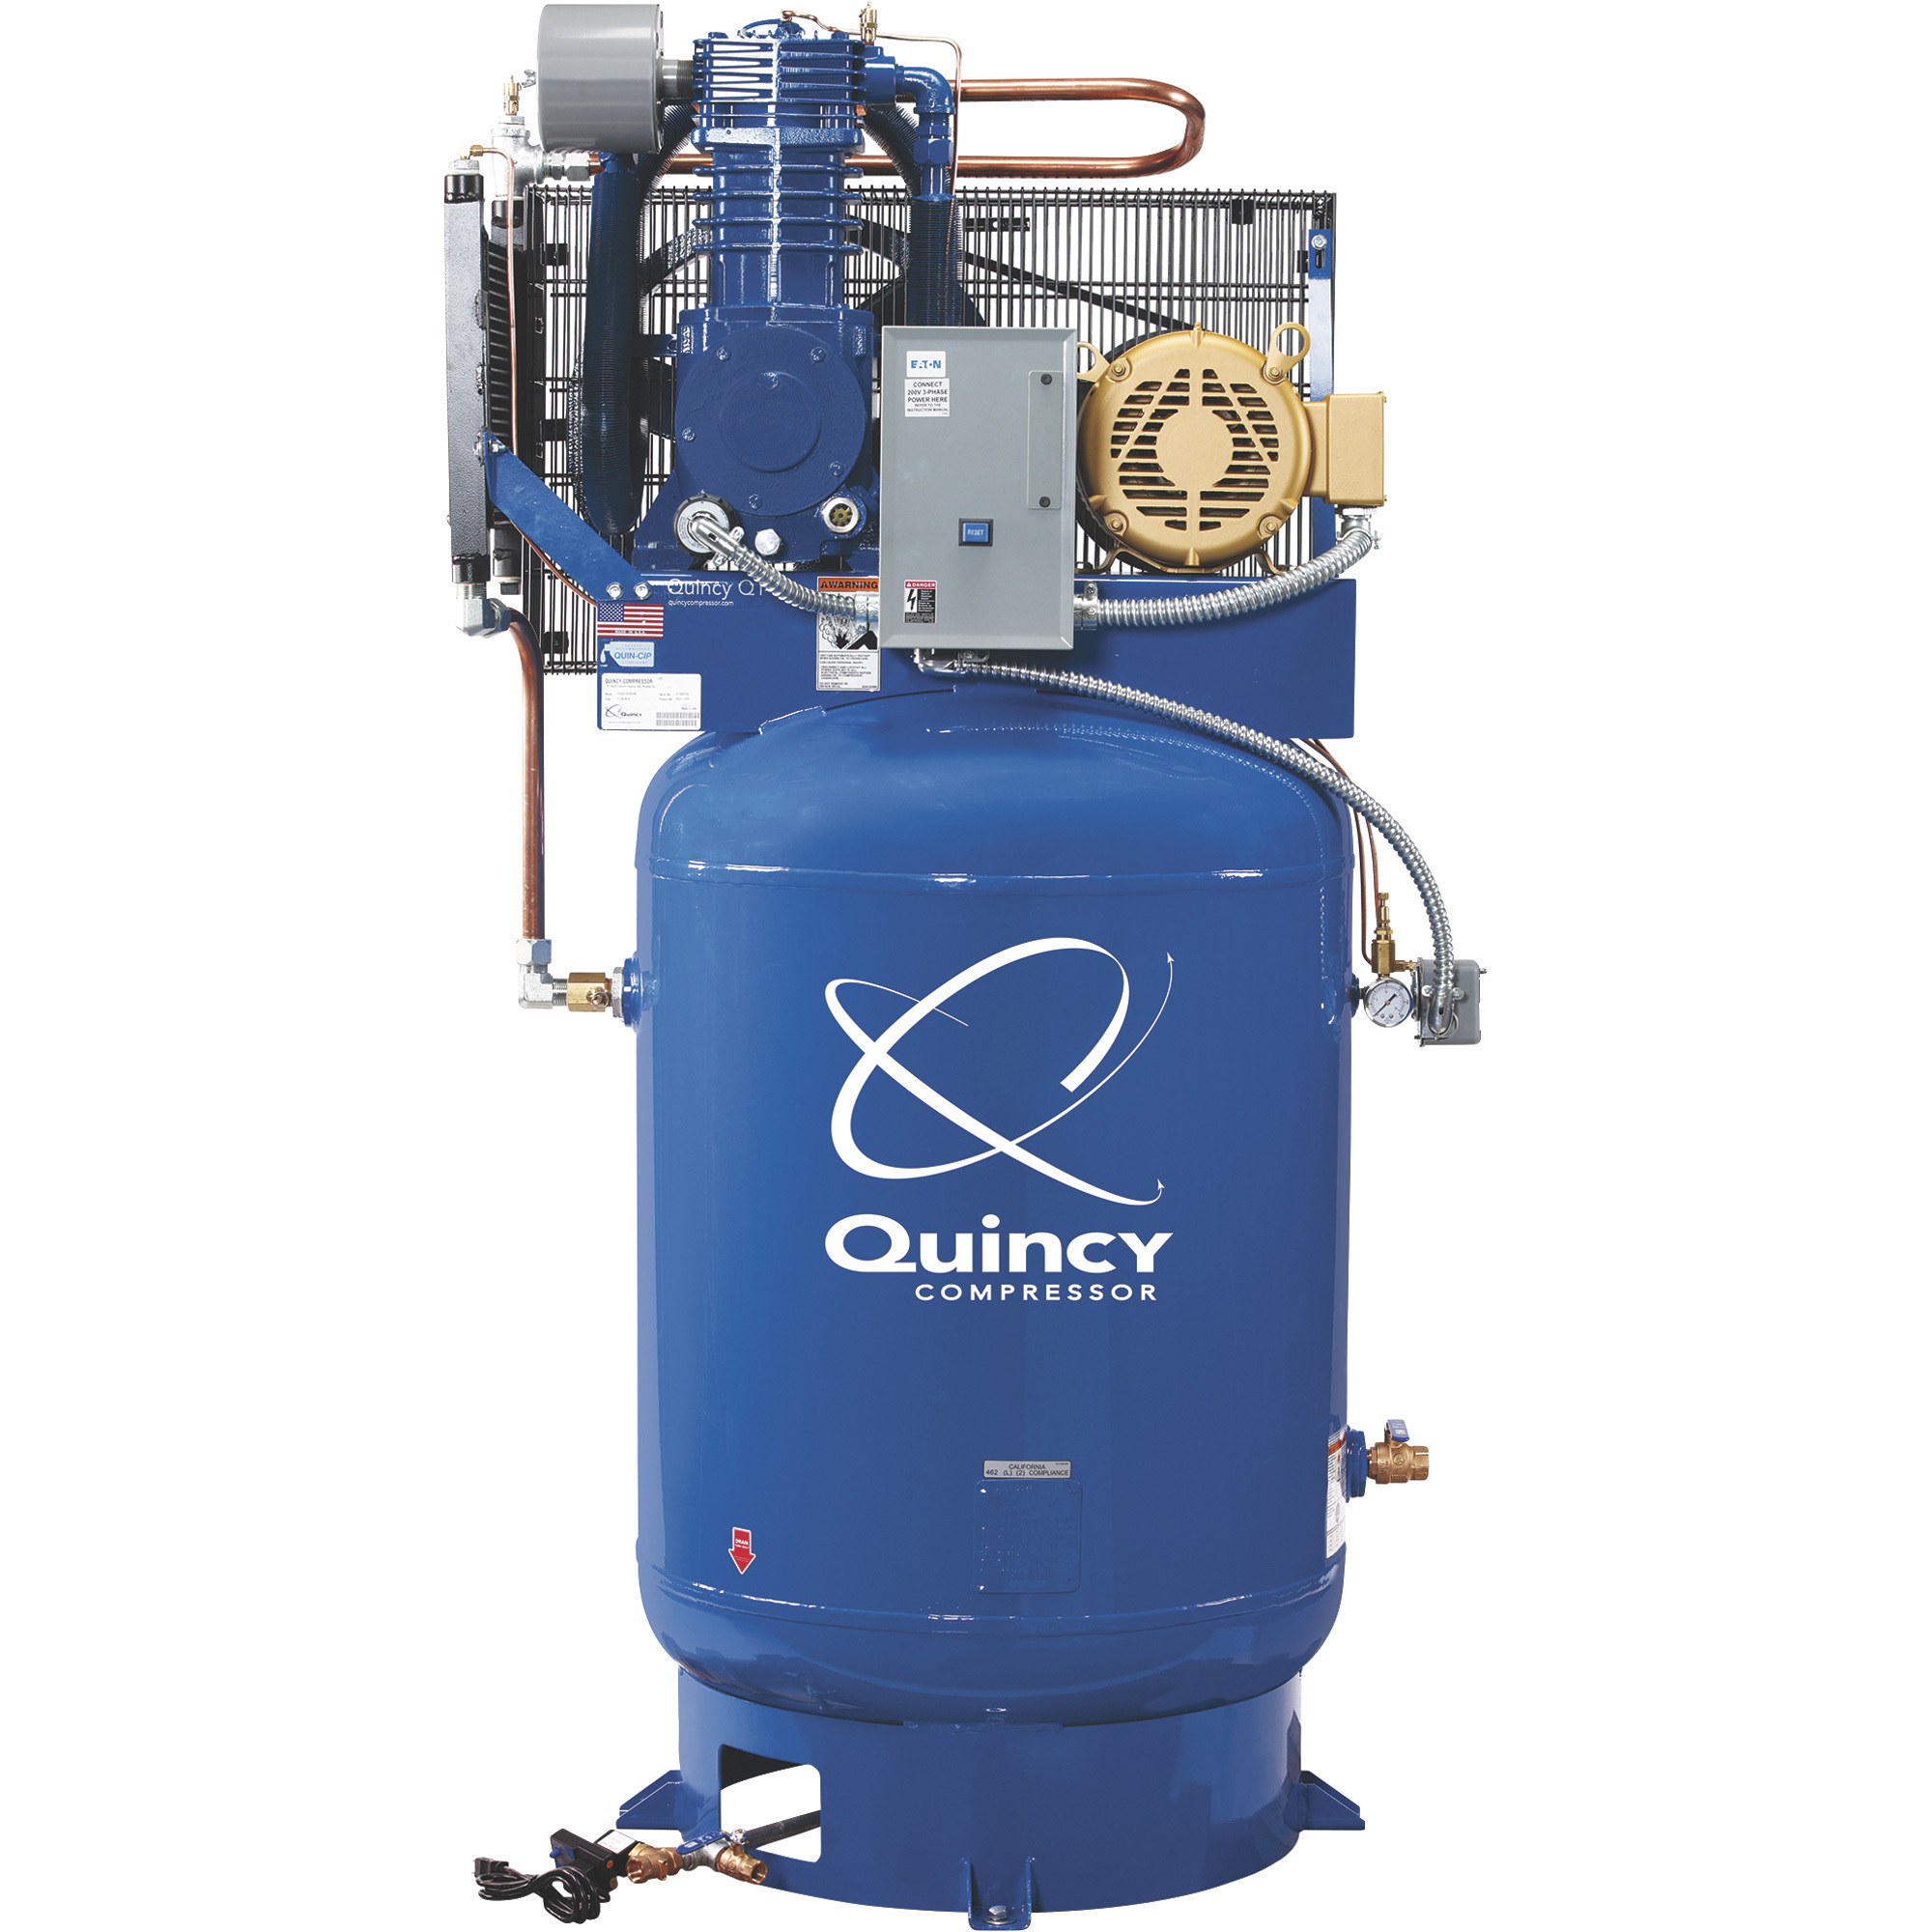 Quincy Compressor 2020014206